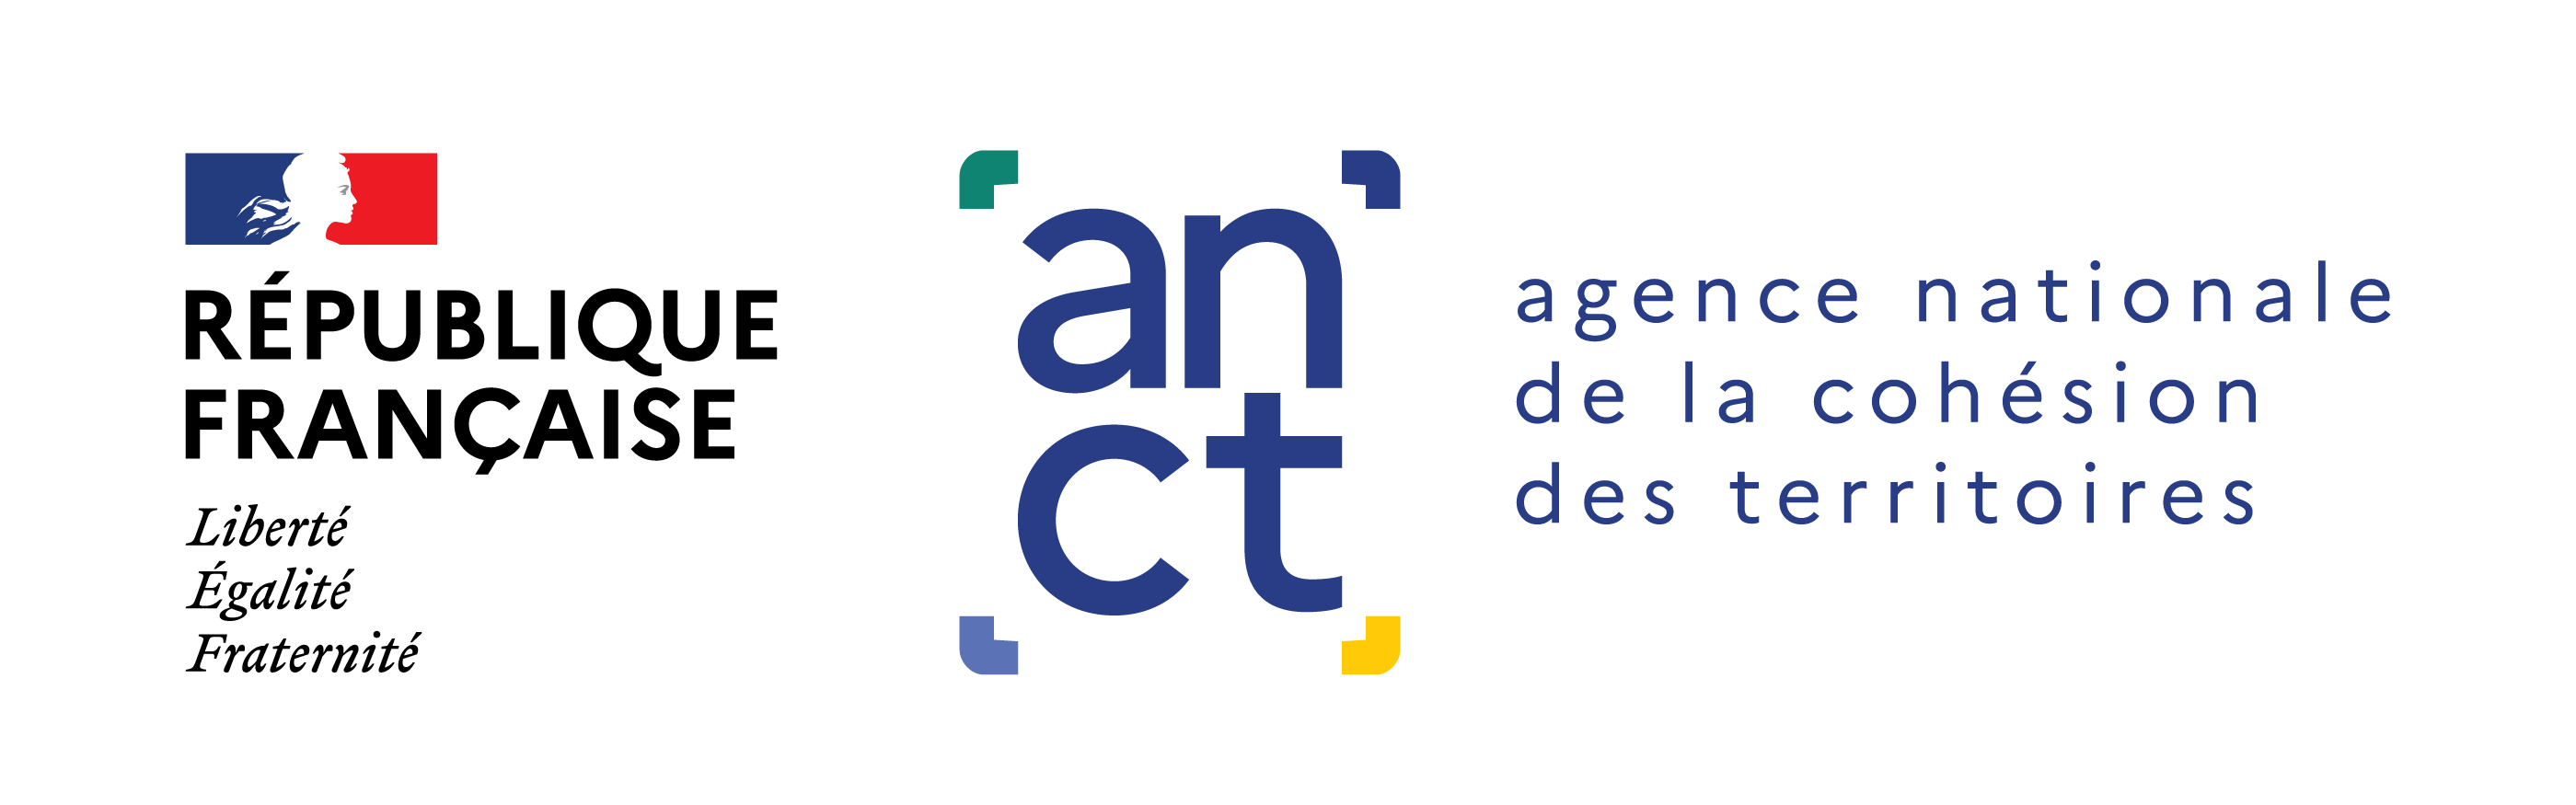 ANCT  (Agence nationale de la cohésion des territoires)